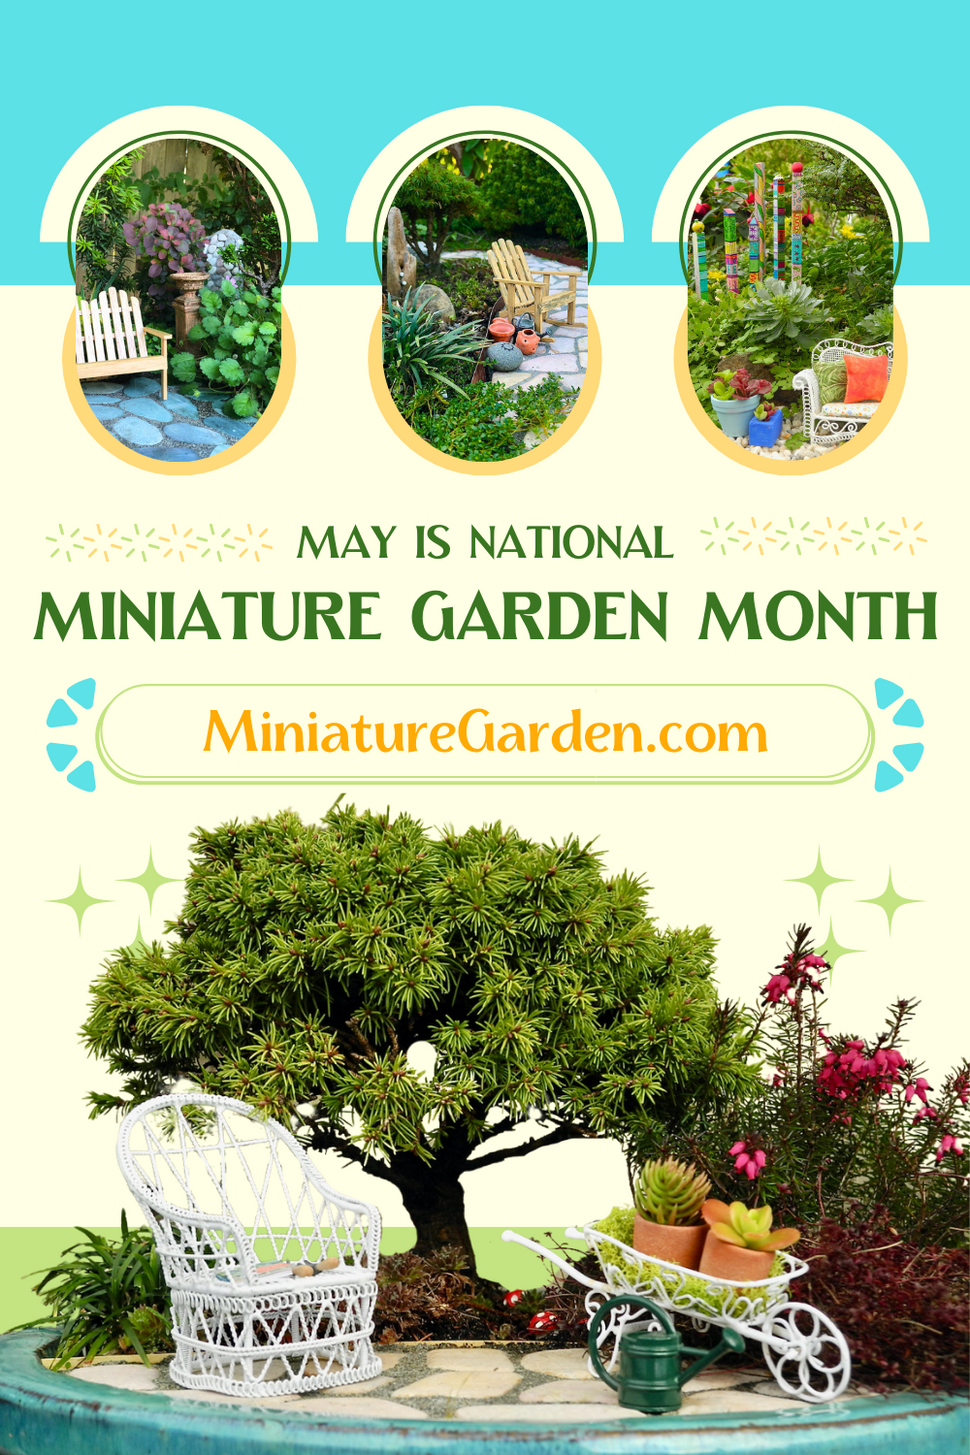 Two Green Thumbs Miniature Garden Center